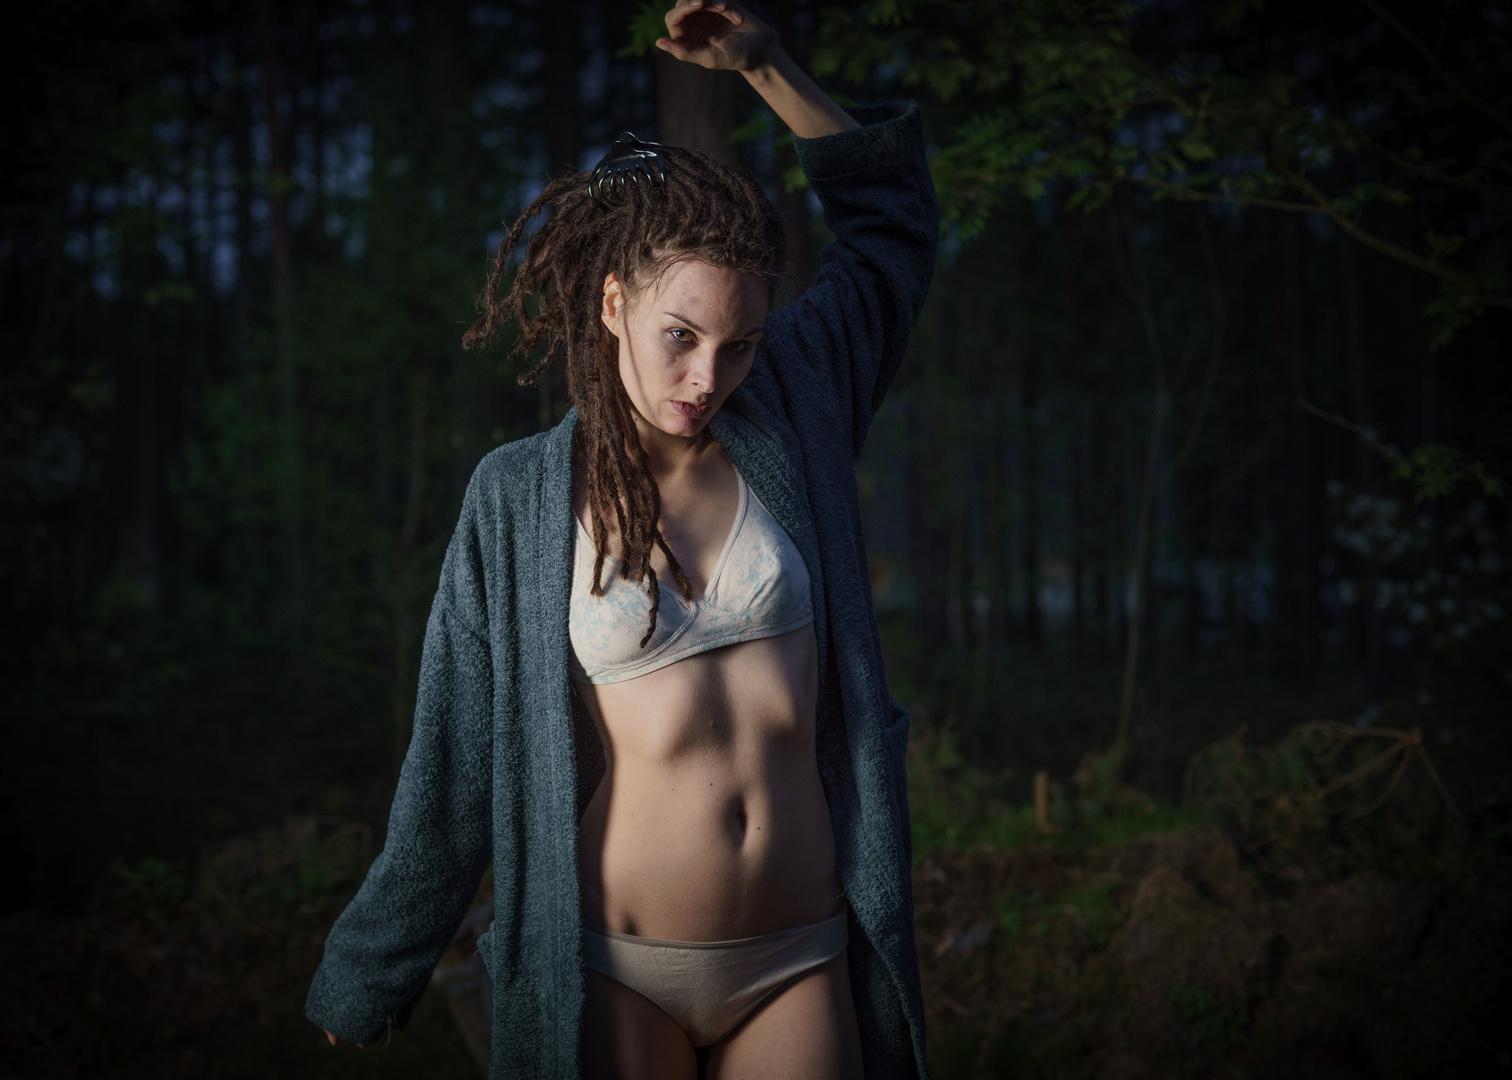 Hanna Arndt/Model. Foto von Christian Nowak